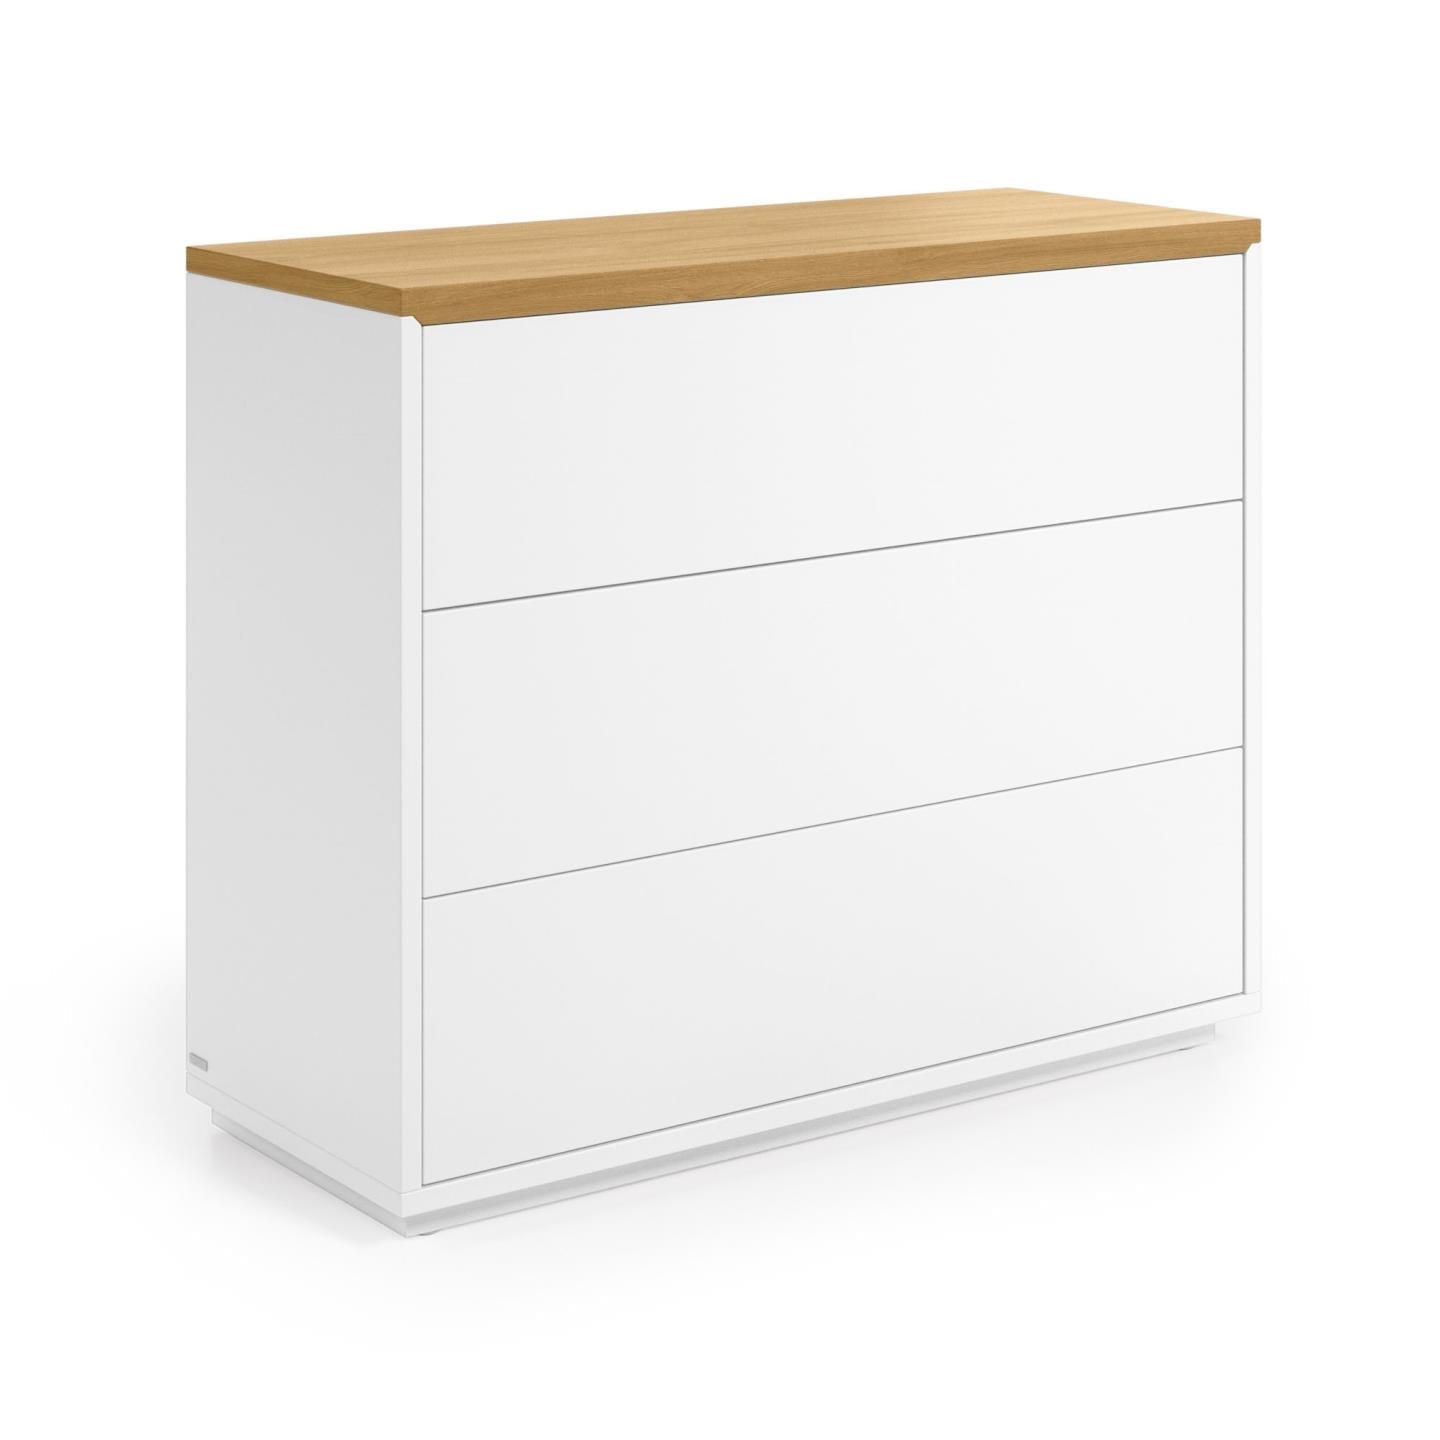 Kave Home Abilen Kommode mit 3 Schubladen Eichenfurnier und weiß lackiert 90 x 75 cm Weiß, Natur- #CC2059L05